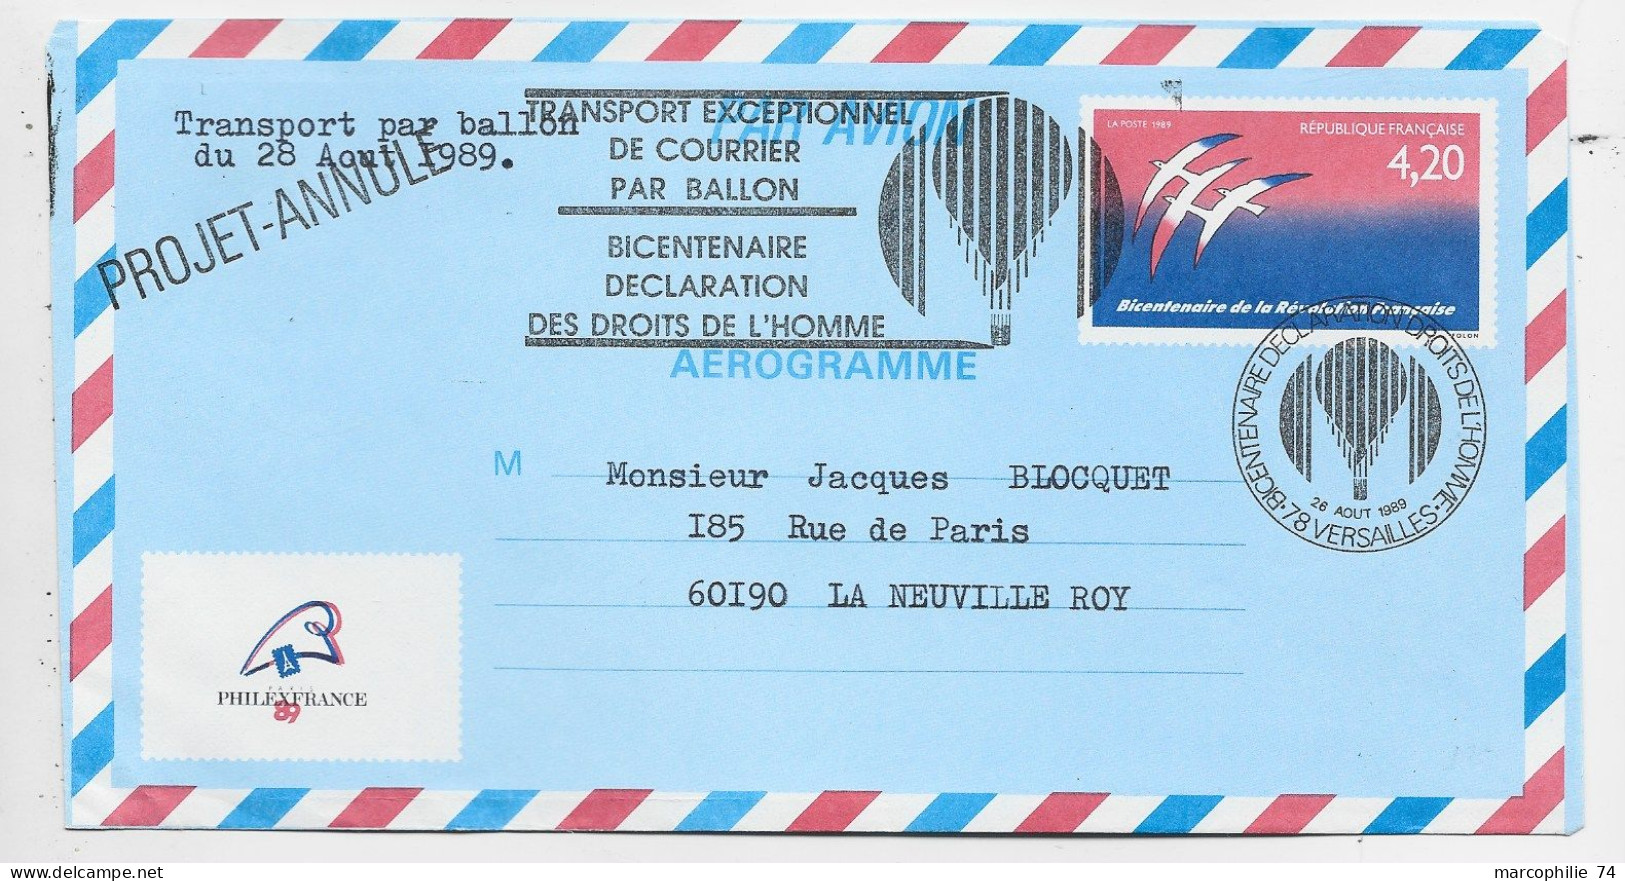 FRANCE AEROGRAMME 4.20 FOLON ENVELOPPE COVER TRANSPORT EXCEPTIONNEL PAR BALLON 1989 PHILEX PROJET ANNULE - Aerograms